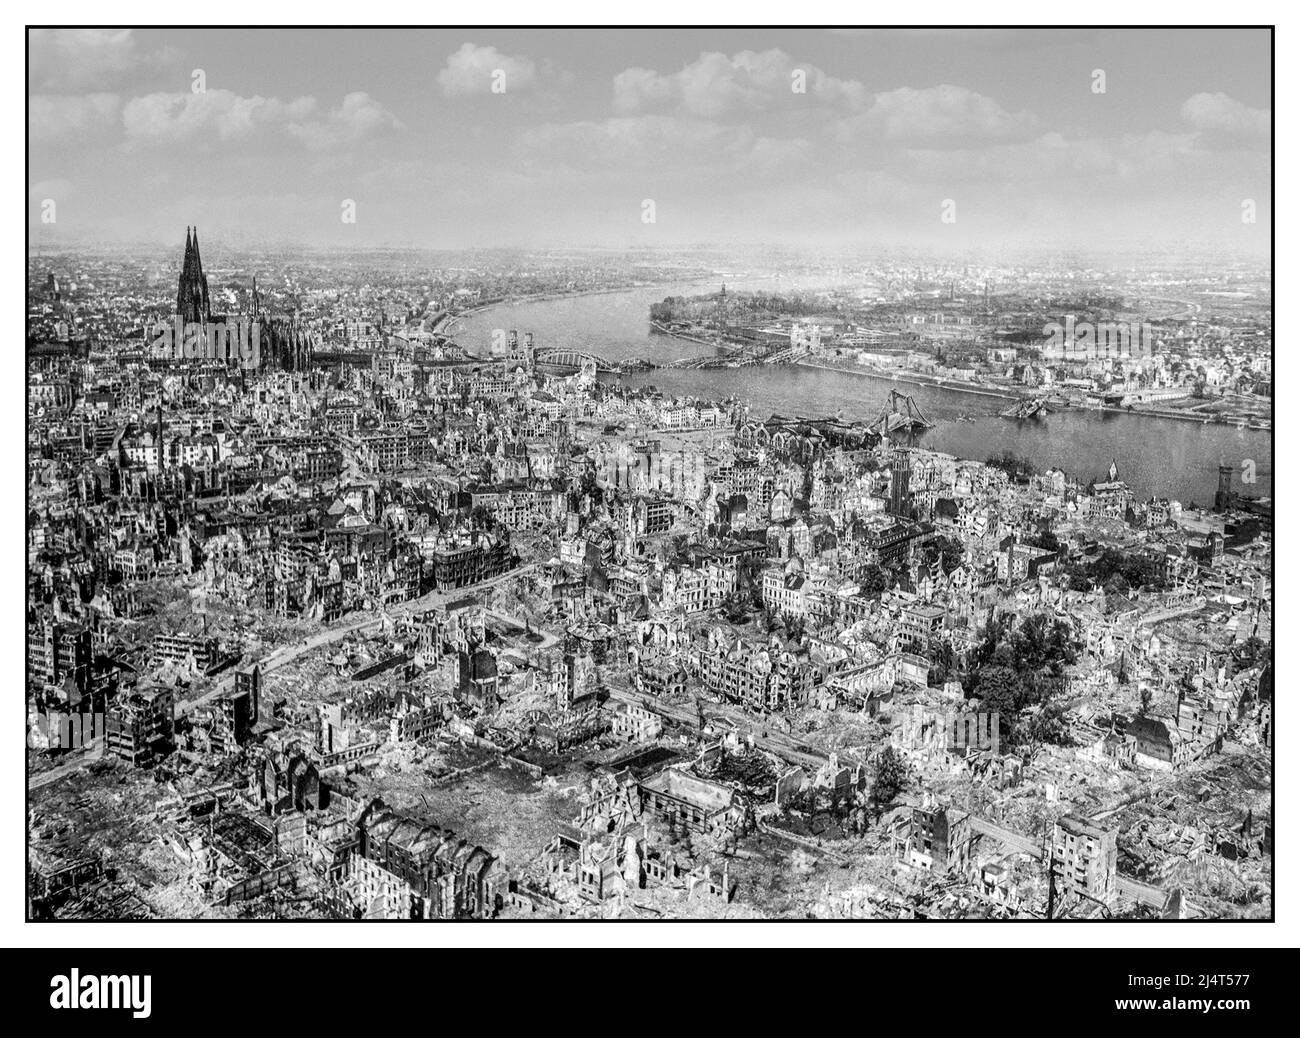 WW2 dommages causés par une bombe alliée Cologne Allemagne nazie le Kölner Dom (cathédrale de Cologne) semble intact (bien qu'ayant été directement touché plusieurs fois et gravement endommagé) tandis que toute la zone environnante est complètement dévastée. La Hauptbahnhof (gare centrale de Köln) et le pont Hohenzollern au-dessus du Rhin sont endommagés au nord et à l'est de la cathédrale. L'attaque de Cologne du 30/31 mai 1942 a été le premier RAID de bombardiers de 1 000. Allemagne occupée, 24 avril 1945. Banque D'Images